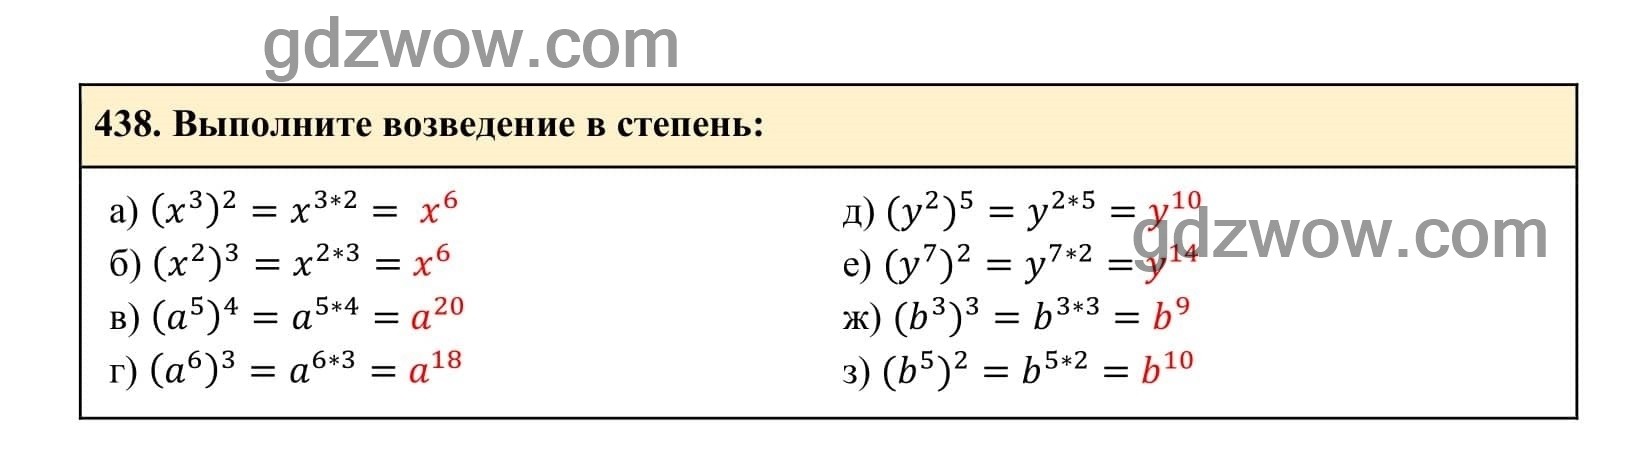 Упражнение 438 - ГДЗ по Алгебре 7 класс Учебник Макарычев (решебник) - GDZwow